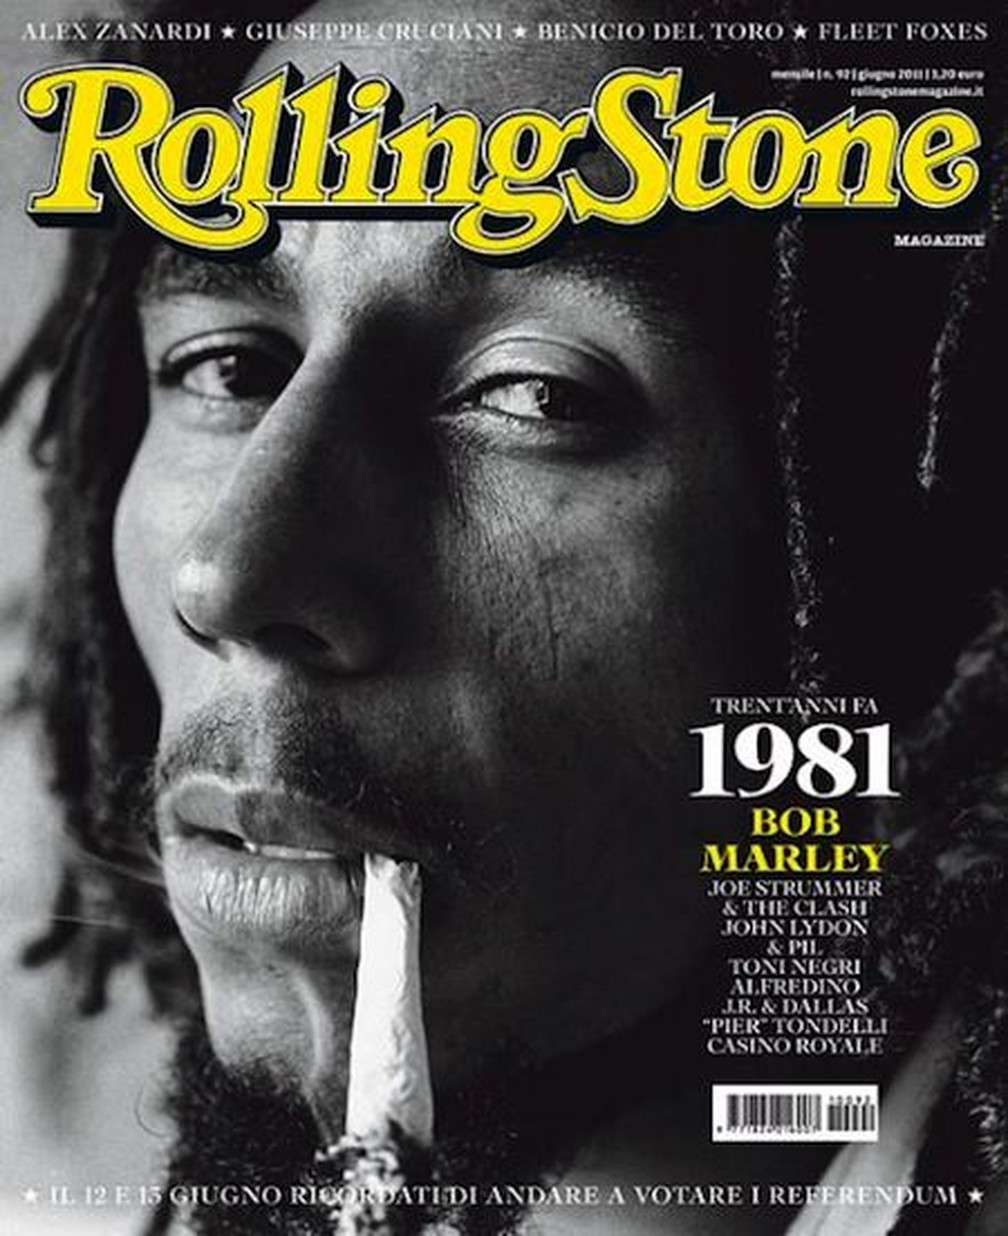 Bob Marley na capa da revista 'Rolling Stone' — Foto: Reprodução/Rolling Stone